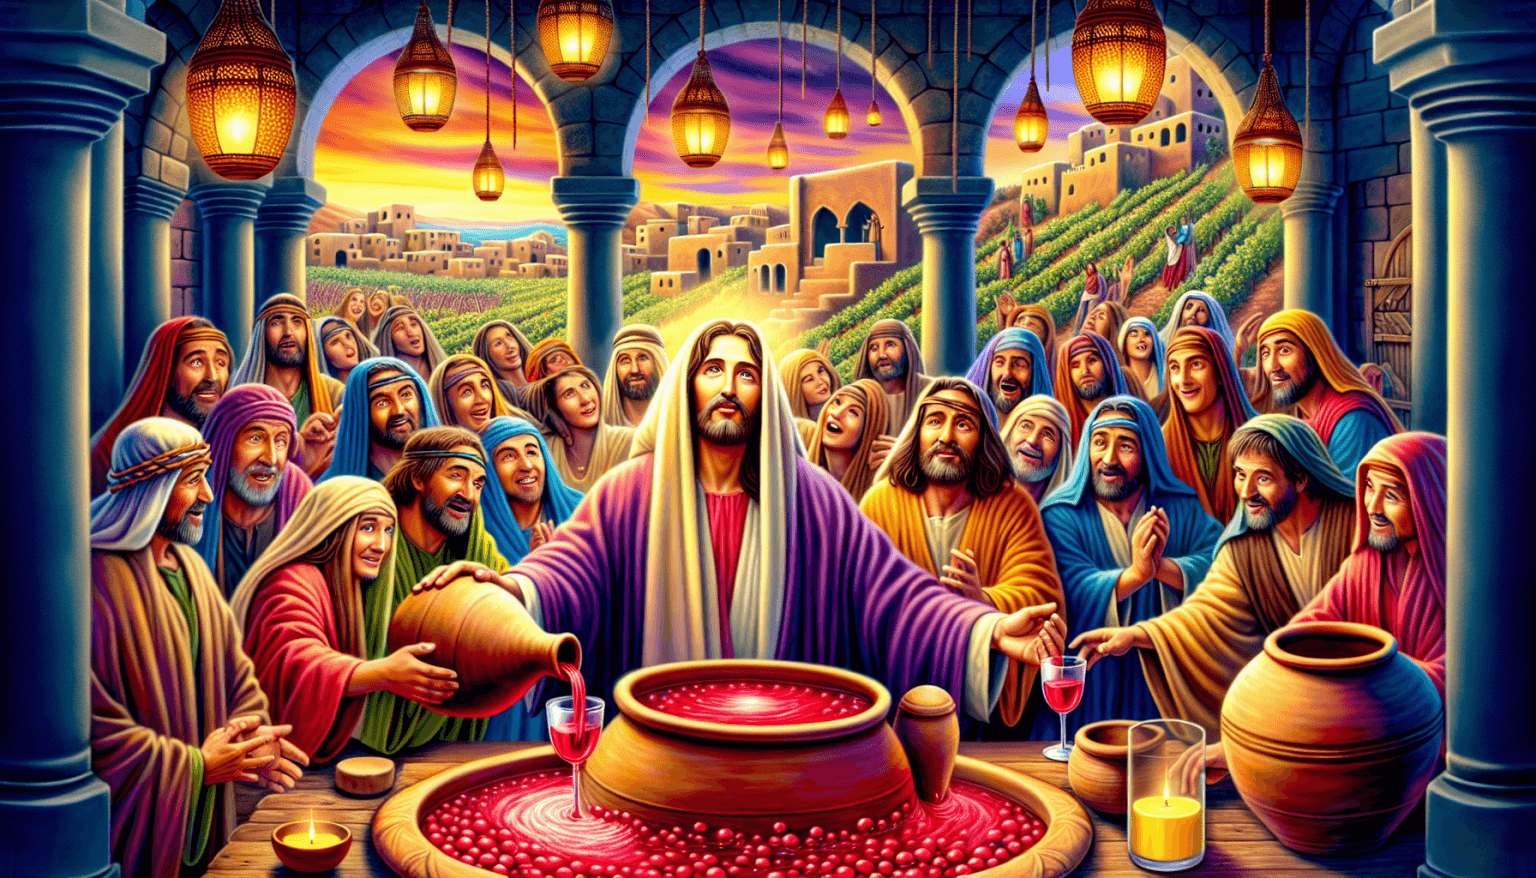 Una representación artística vívida del primer milagro de Jesús en las bodas de Caná, donde transforma el agua en vino. La escena muestra a Jesús en el centro, con una expresión serena, rodeado de inv